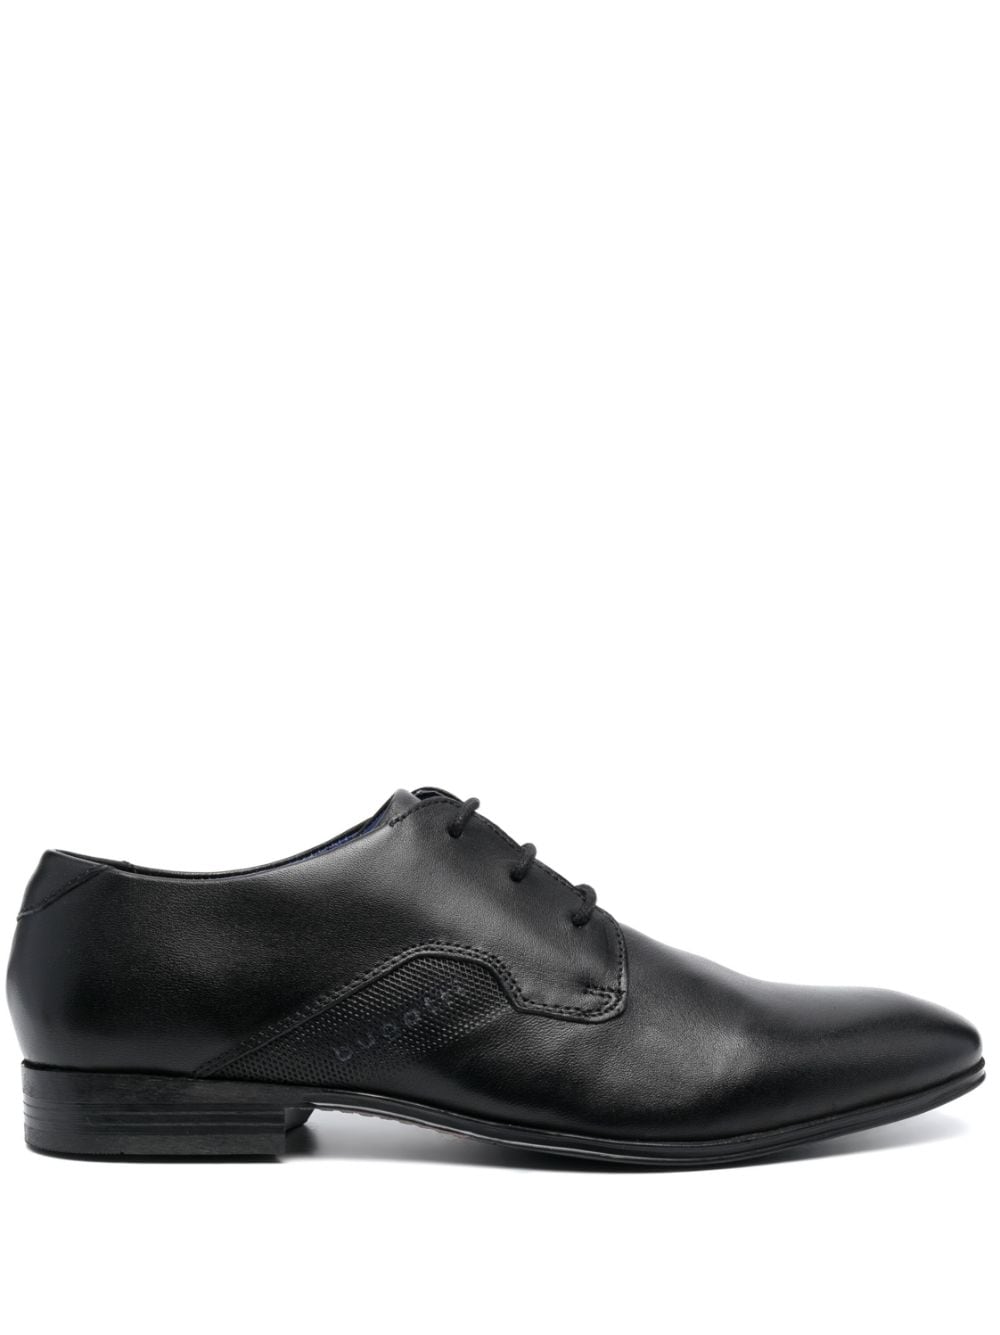 Bugatti Mattia Eco leather Oxford shoes - Black